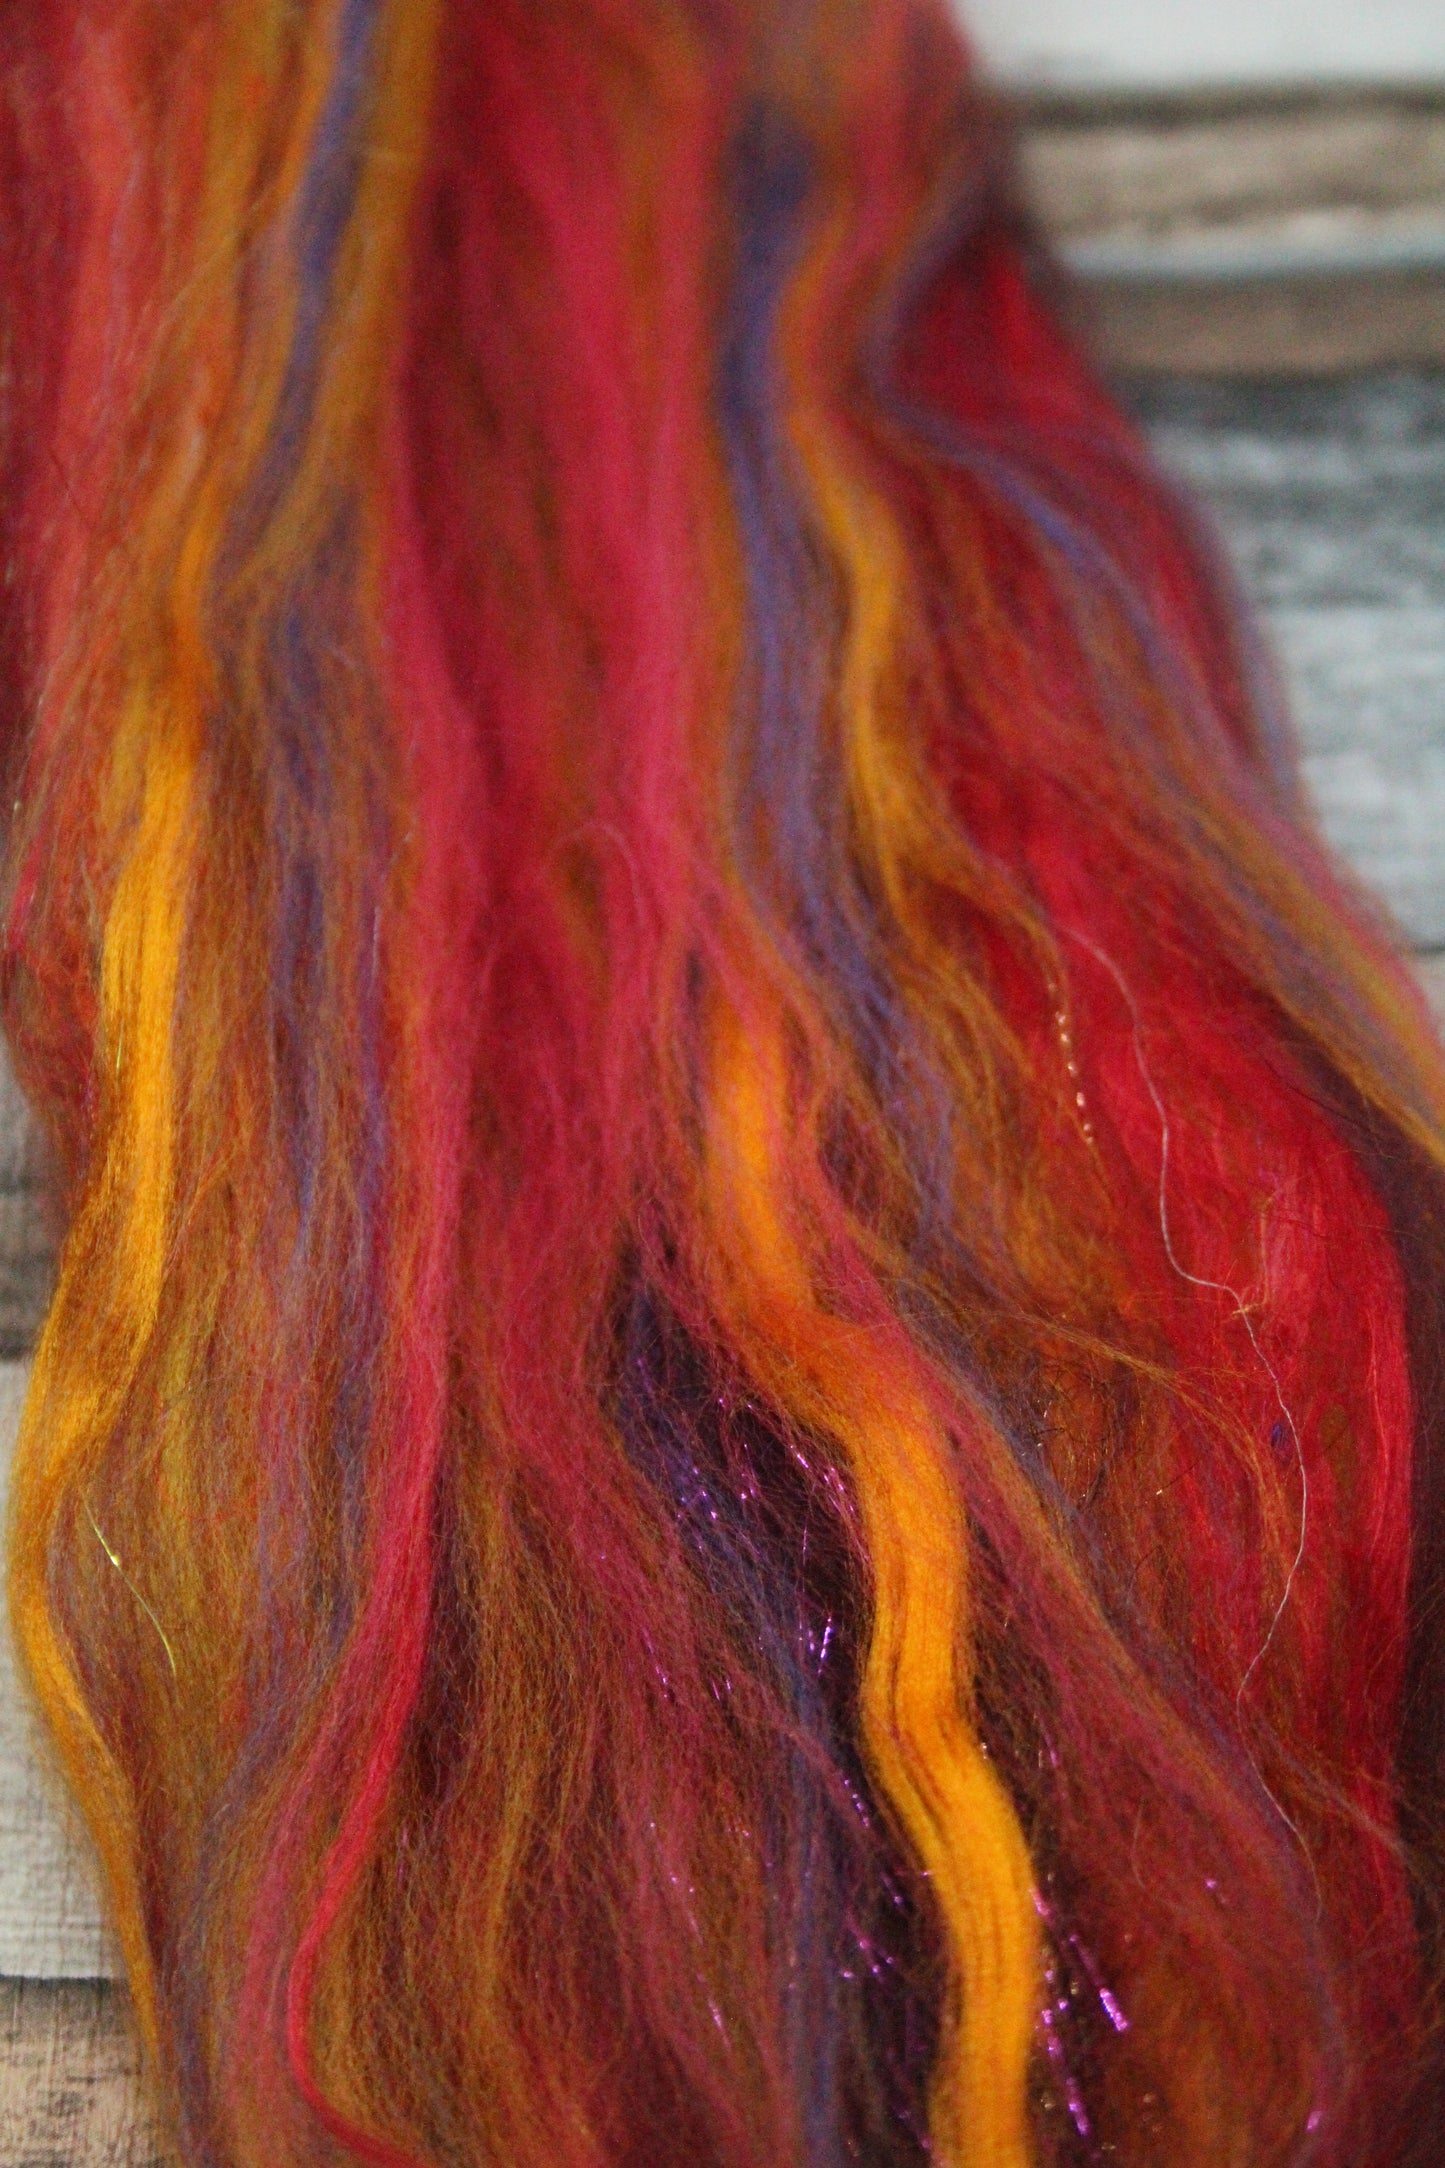 Merino Wool Blend - Red Brown Orange - 22 grams / 0.7 oz  - Fibre for felting, weaving or spinning